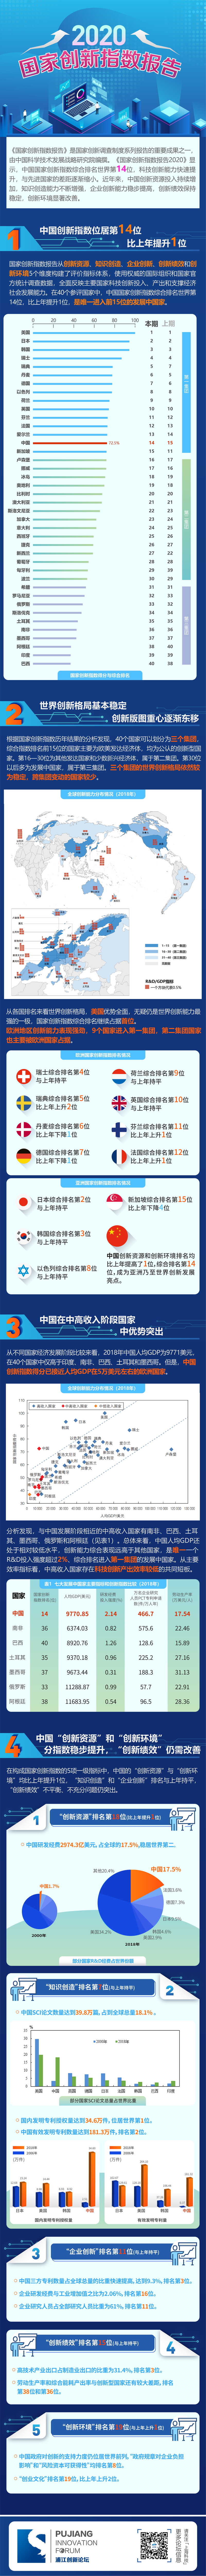 国家创新指数报告：中国国家创新指数综合排名世界第14位